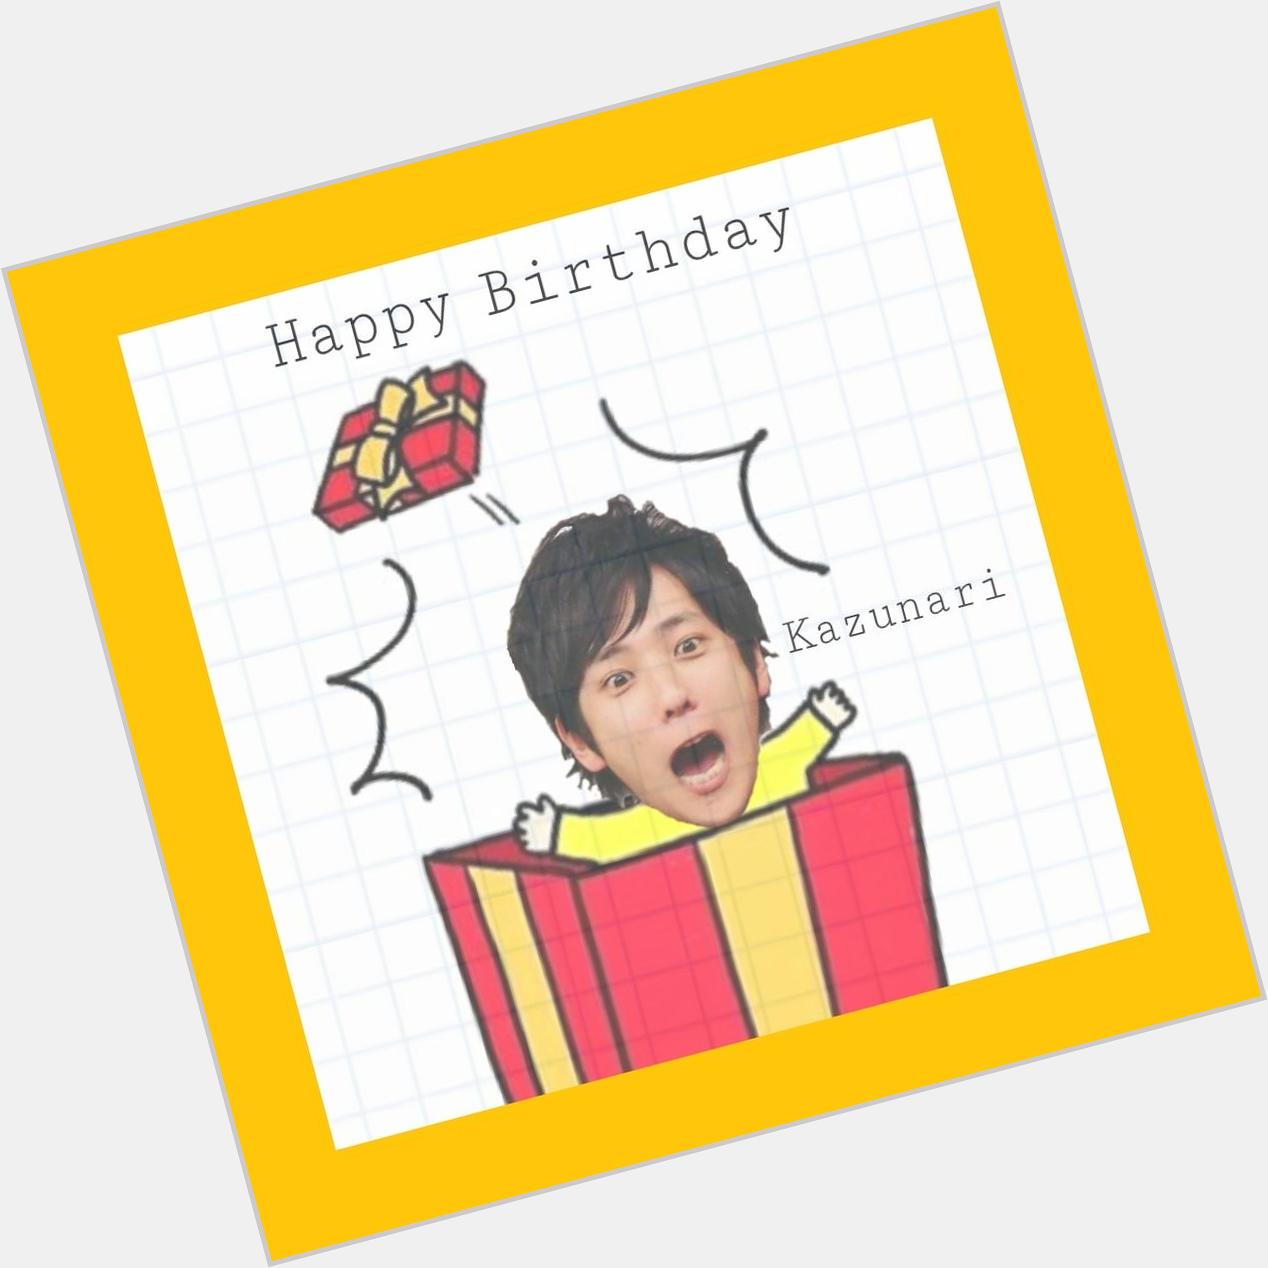                                                      Happy Birthday     Kazunari  Ninomiya 